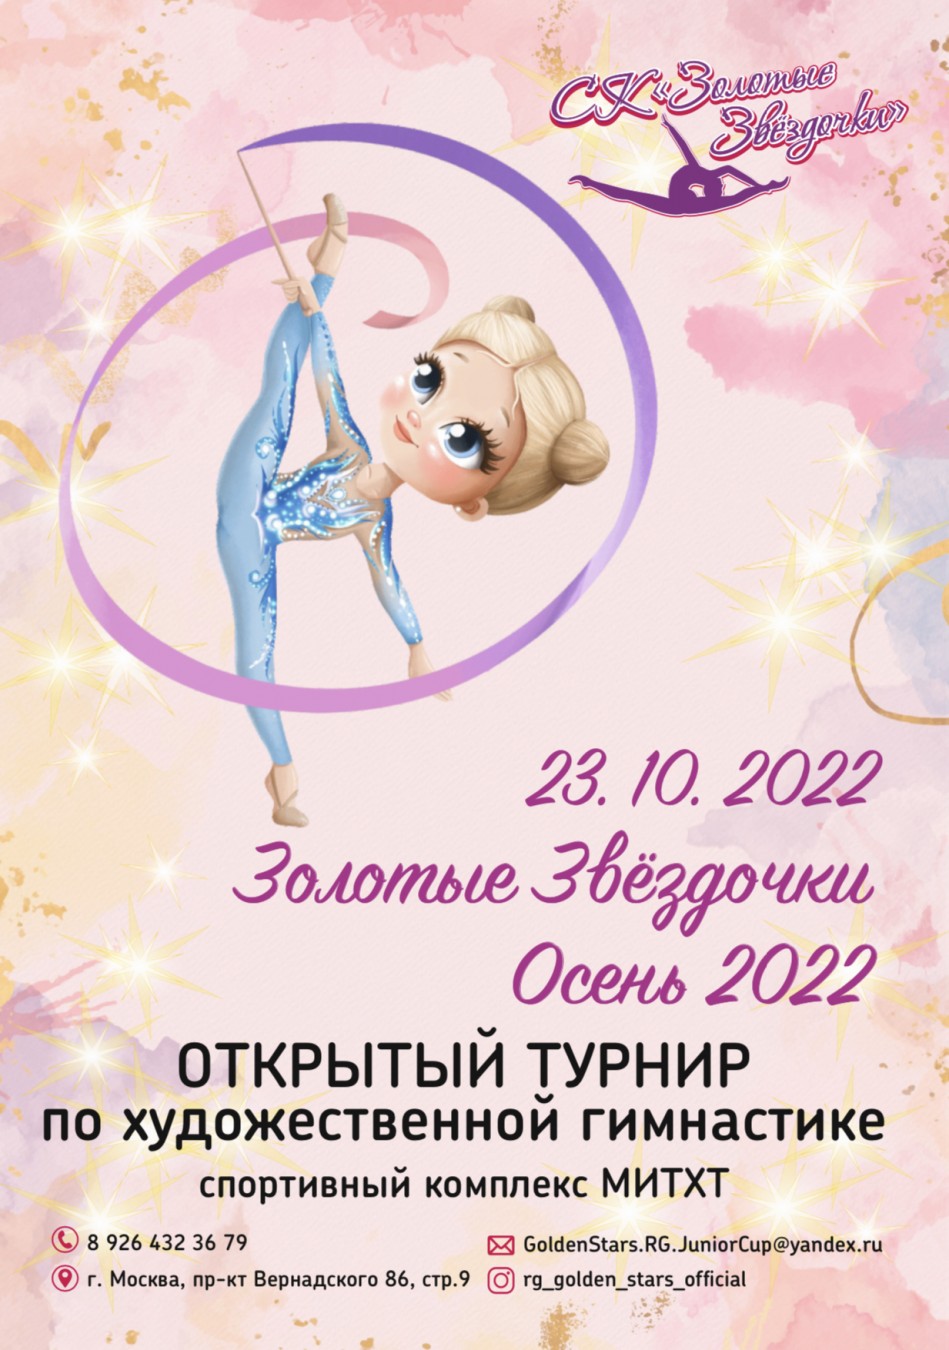 Открытый турнир по художественной гимнастики «Золотые Звёздочки – Осень 2022», 23 октября 2022, Москва